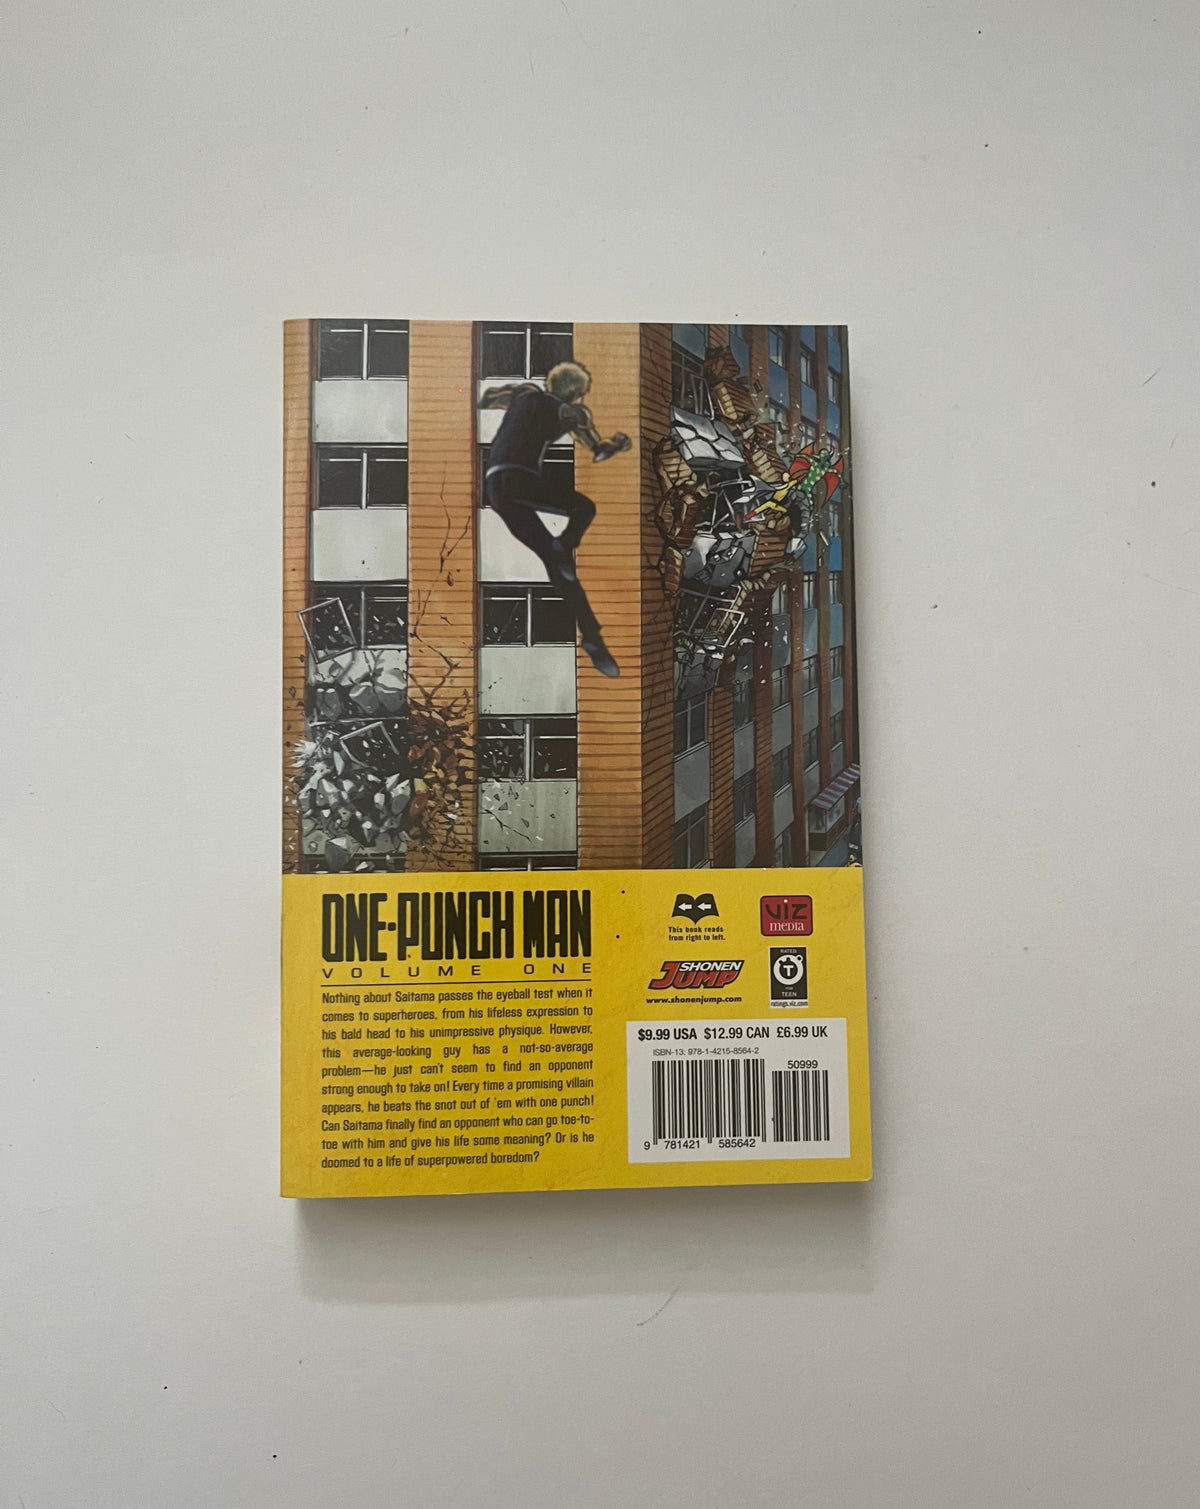 One-Punch Man 1 by Yusuke Murata